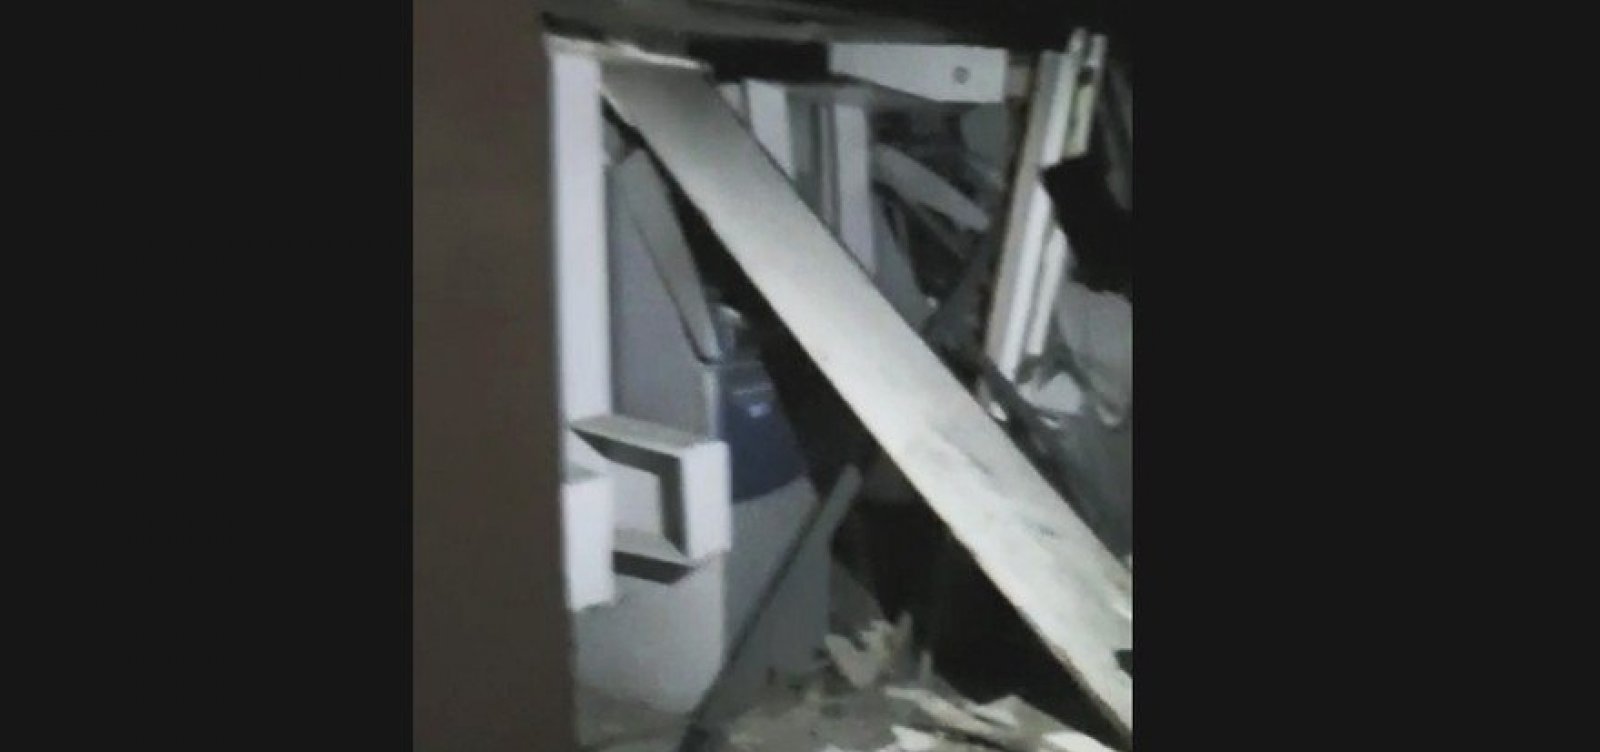 Bandidos explodem banco em Sapeaçu e interior da unidade fica destruído